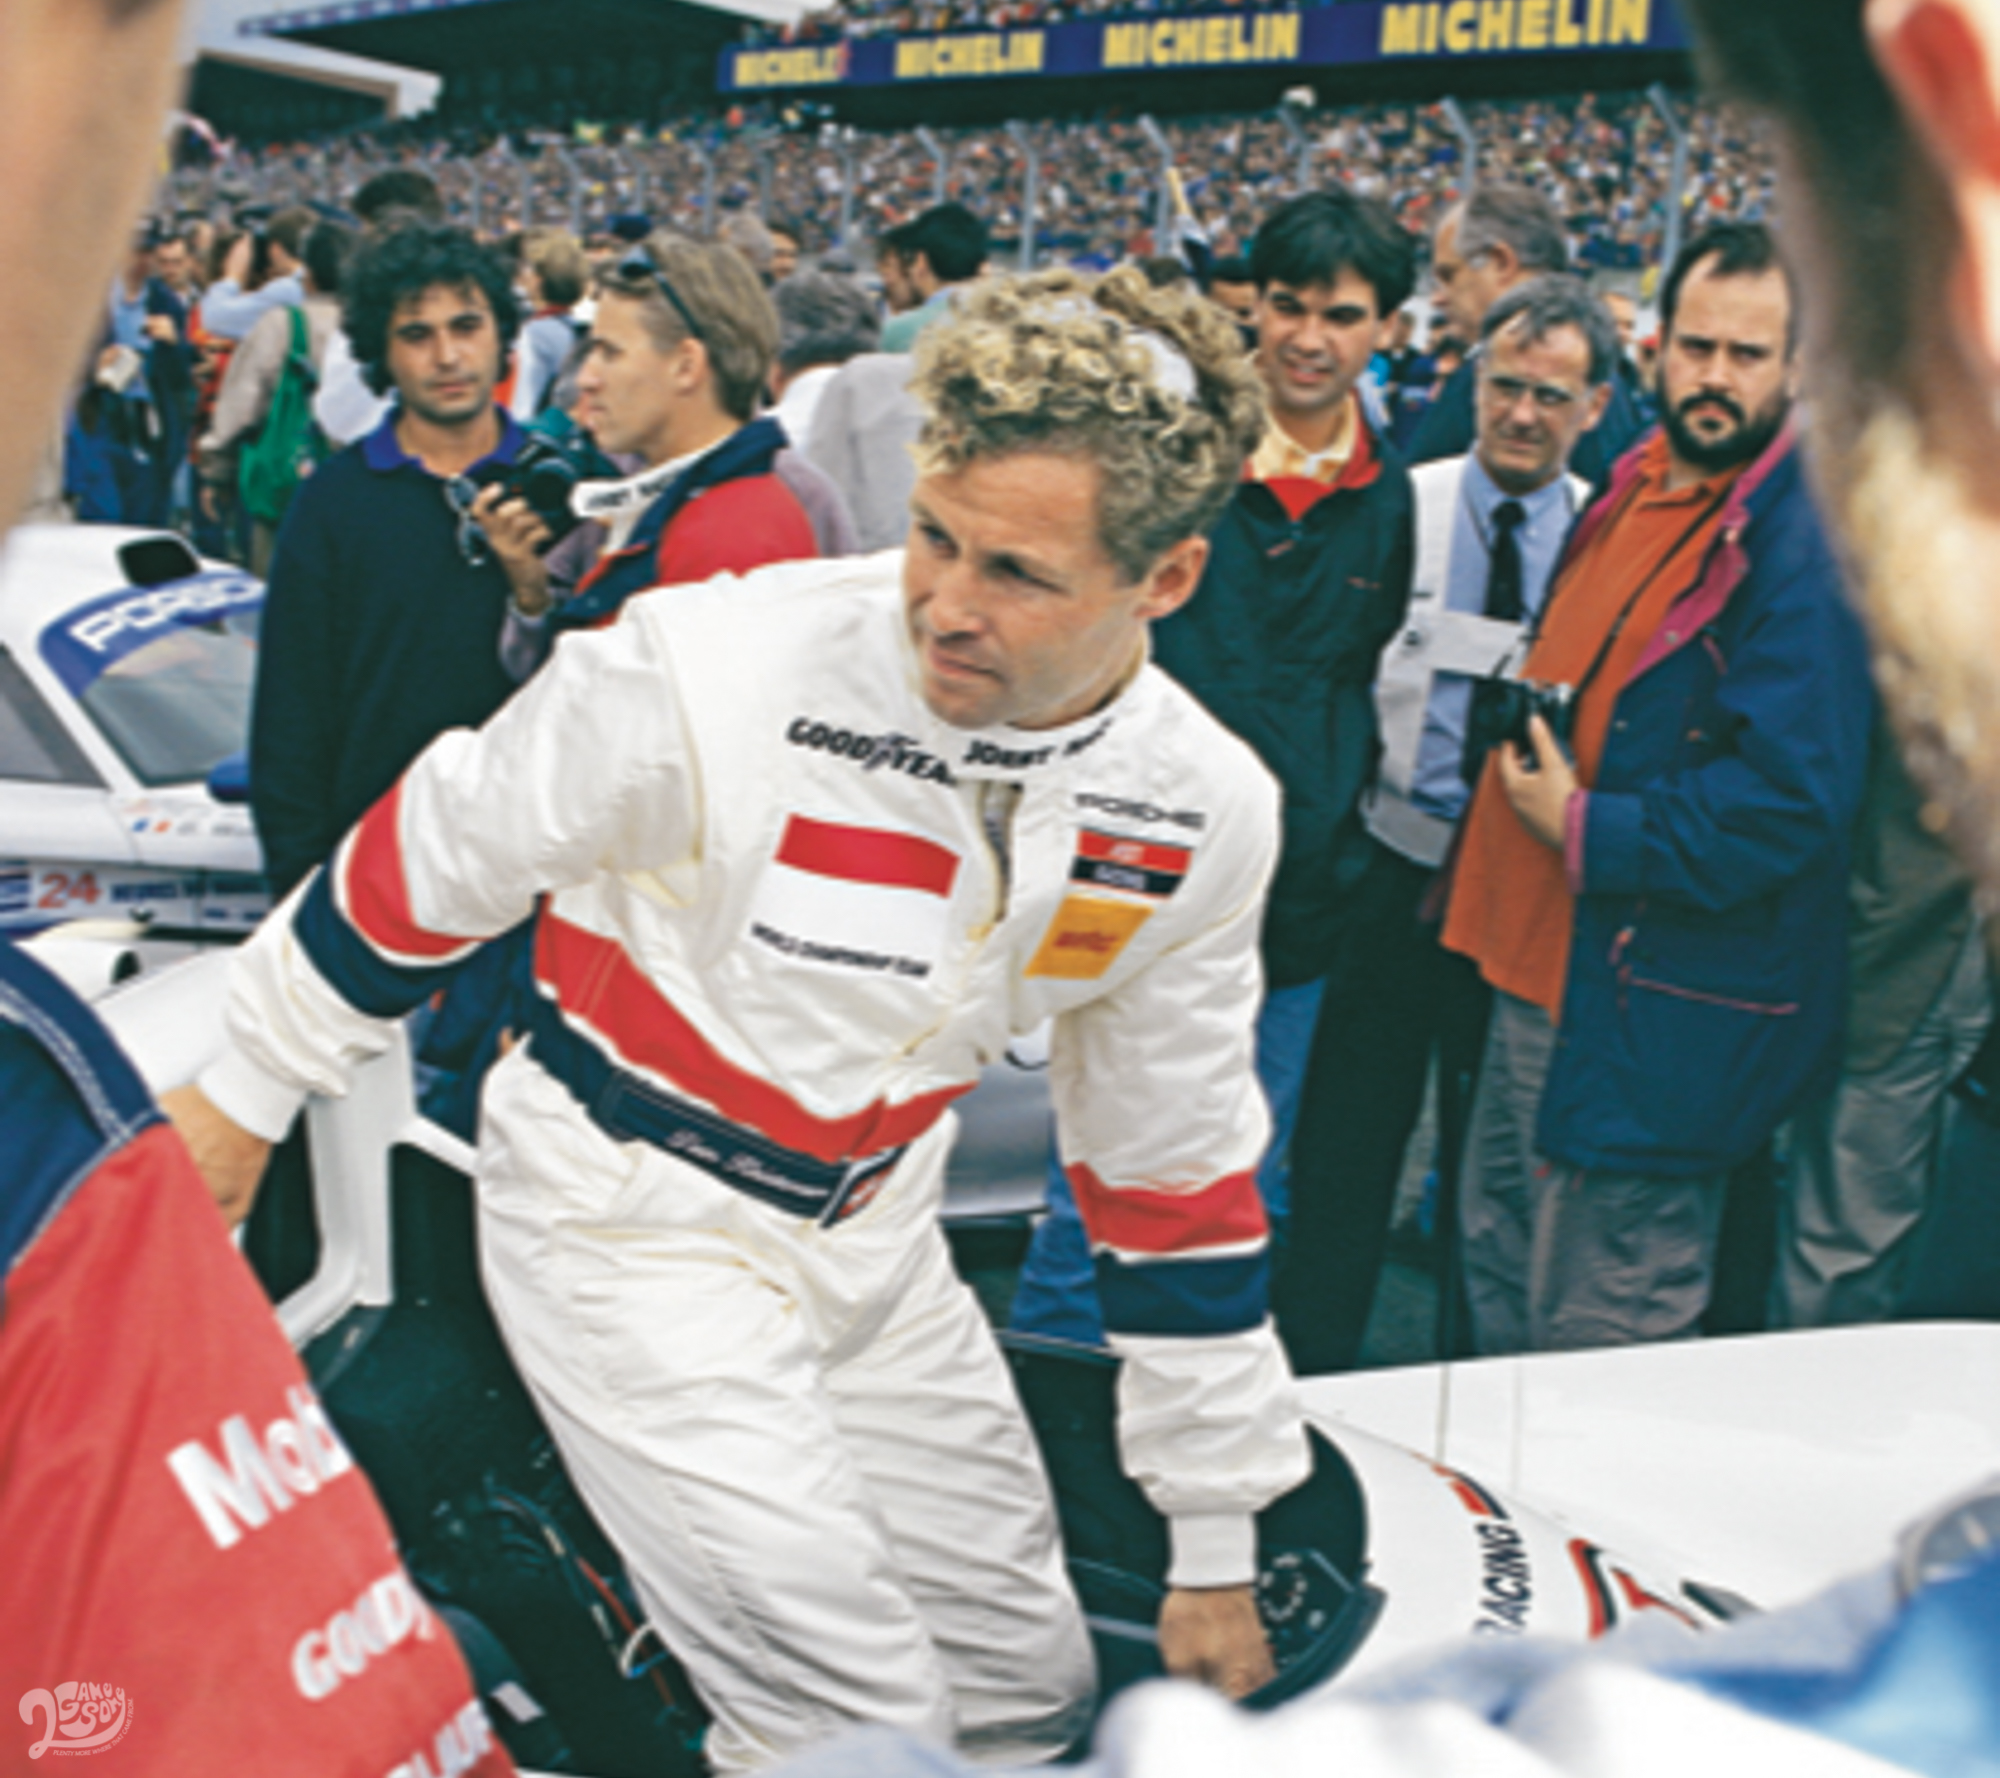 湯姆‧克里斯滕森（TOM KRISTENSEN）現身 1997 年利曼 24 小時耐力賽。